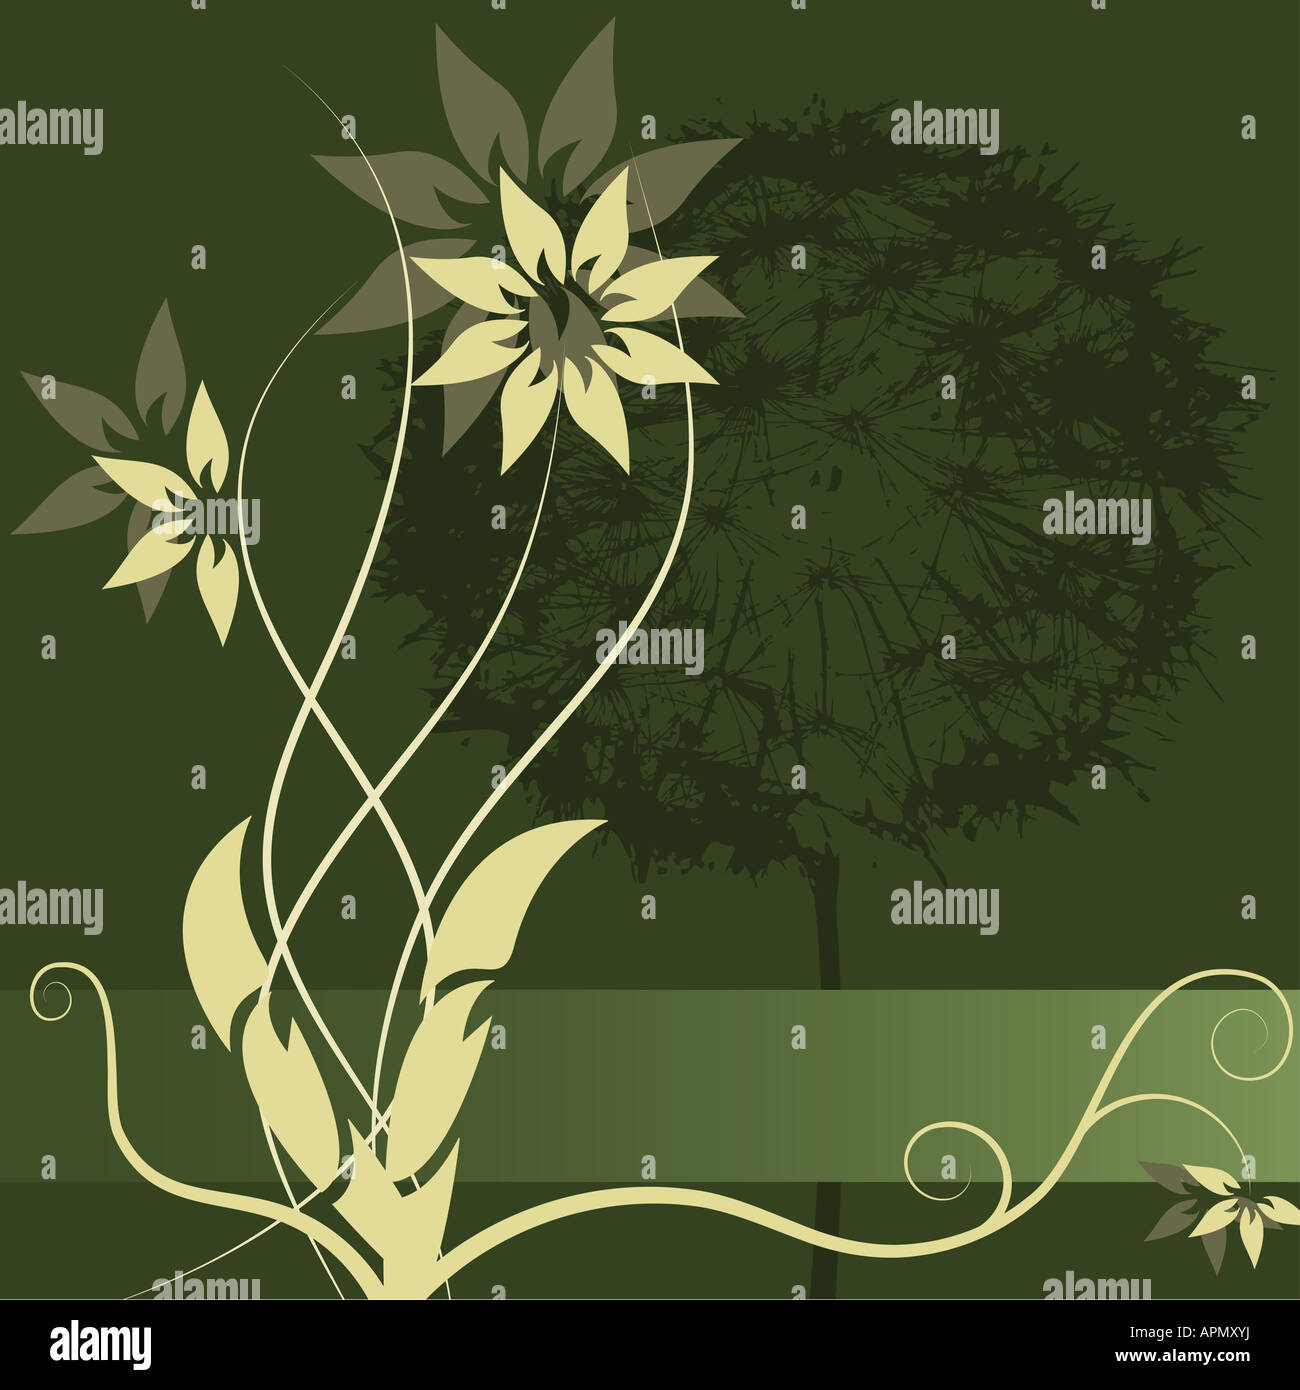 Graphischen Vektor Blume Etikettengestaltung Stockfoto